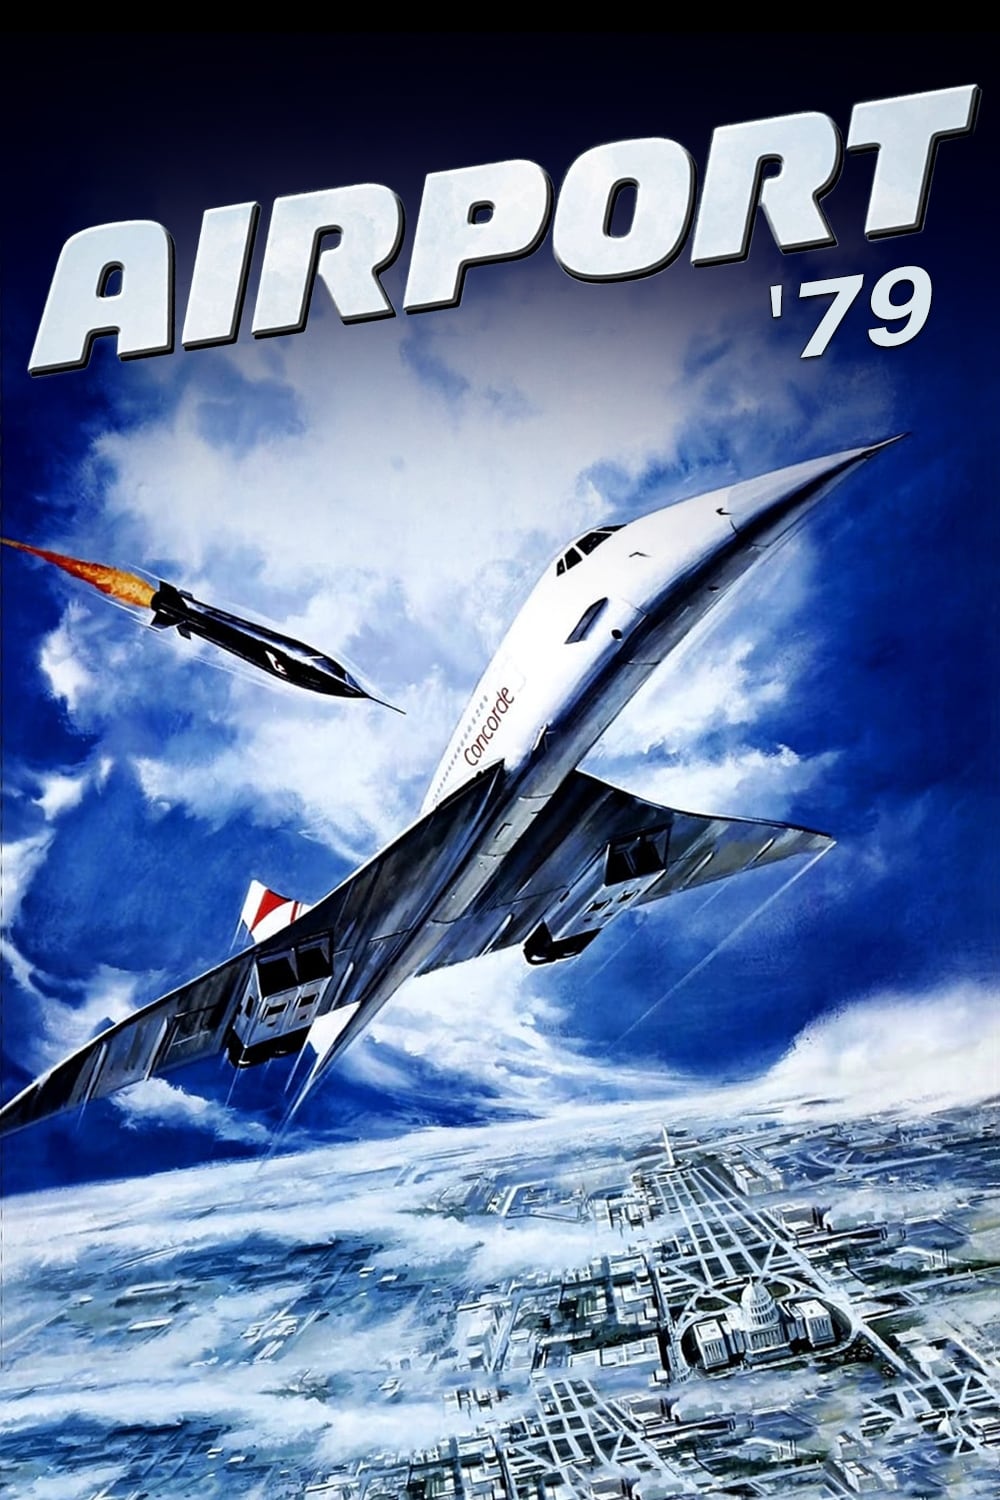 Aeropuerto 79. Concorde (1979)